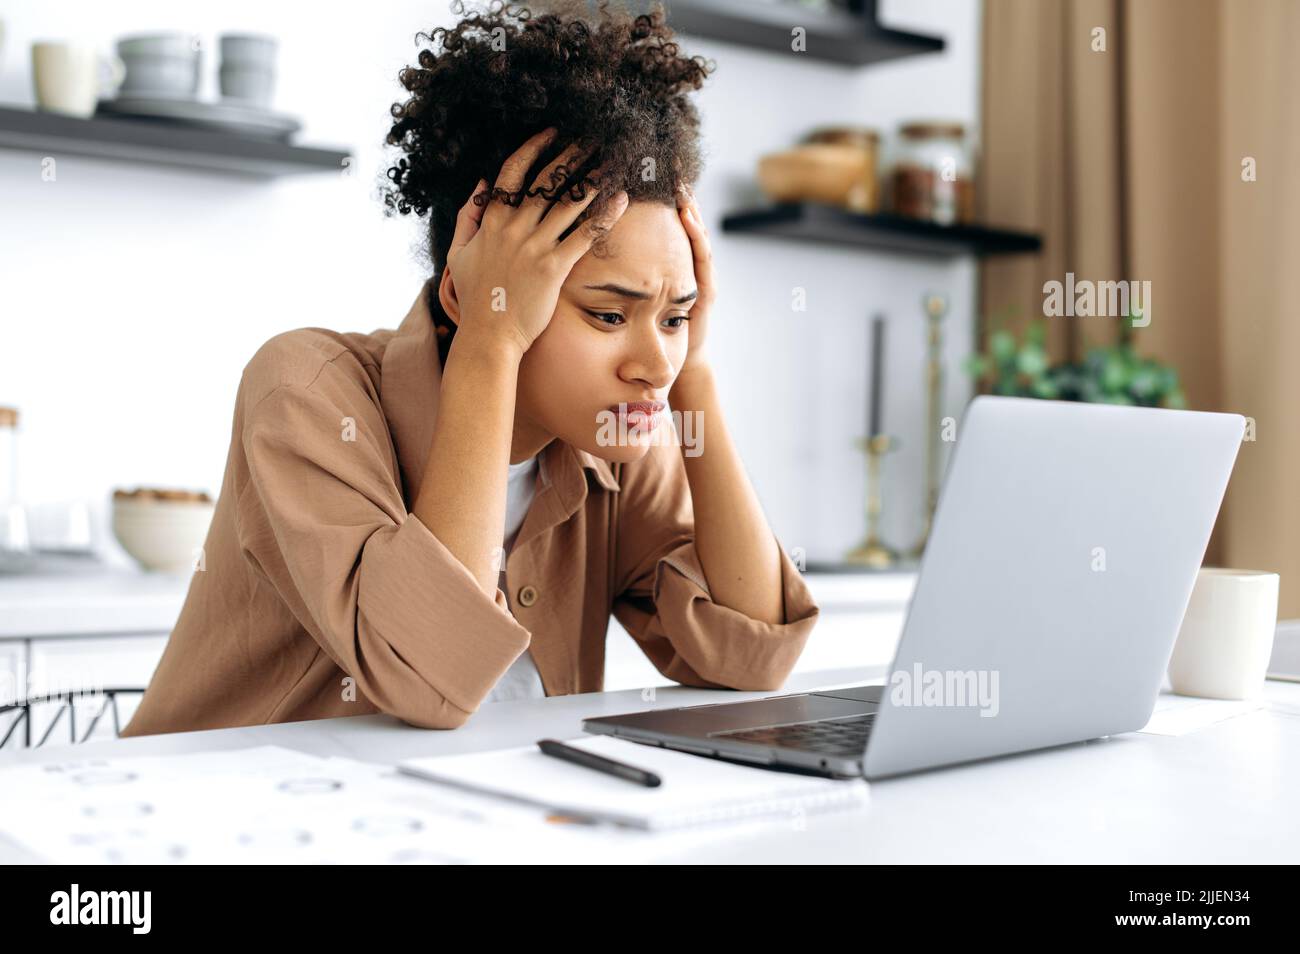 Verzweifelt besorgt traurig afroamerikanische junge Frau, mit Laptop für die Arbeit oder Studium von zu Hause aus, sitzen in der Küche, frustriert Blick auf den Bildschirm, gescheitert Projekt, bekam finanziellen Verlust, Arbeitsplatz Downgrade Stockfoto